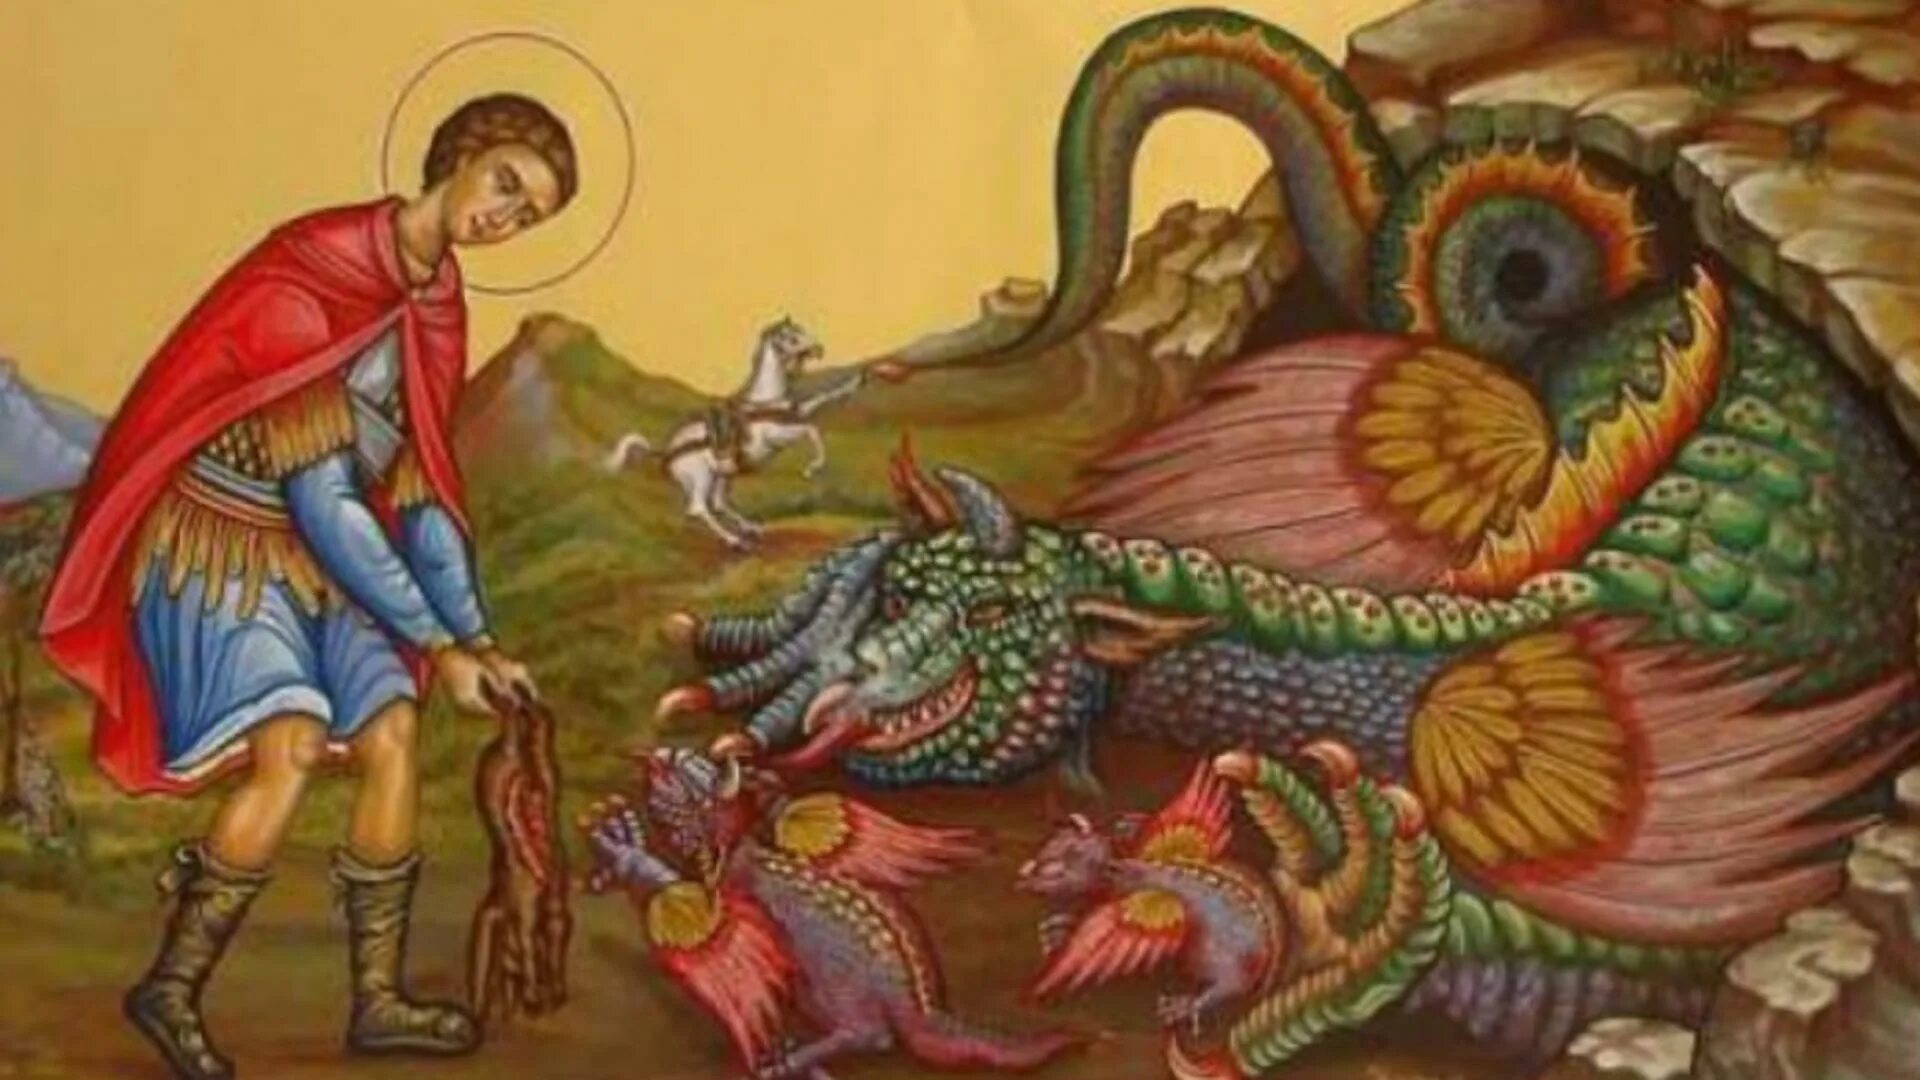 Победоносец поразил змея. Икона Святого Георгия Победоносец и дракон.